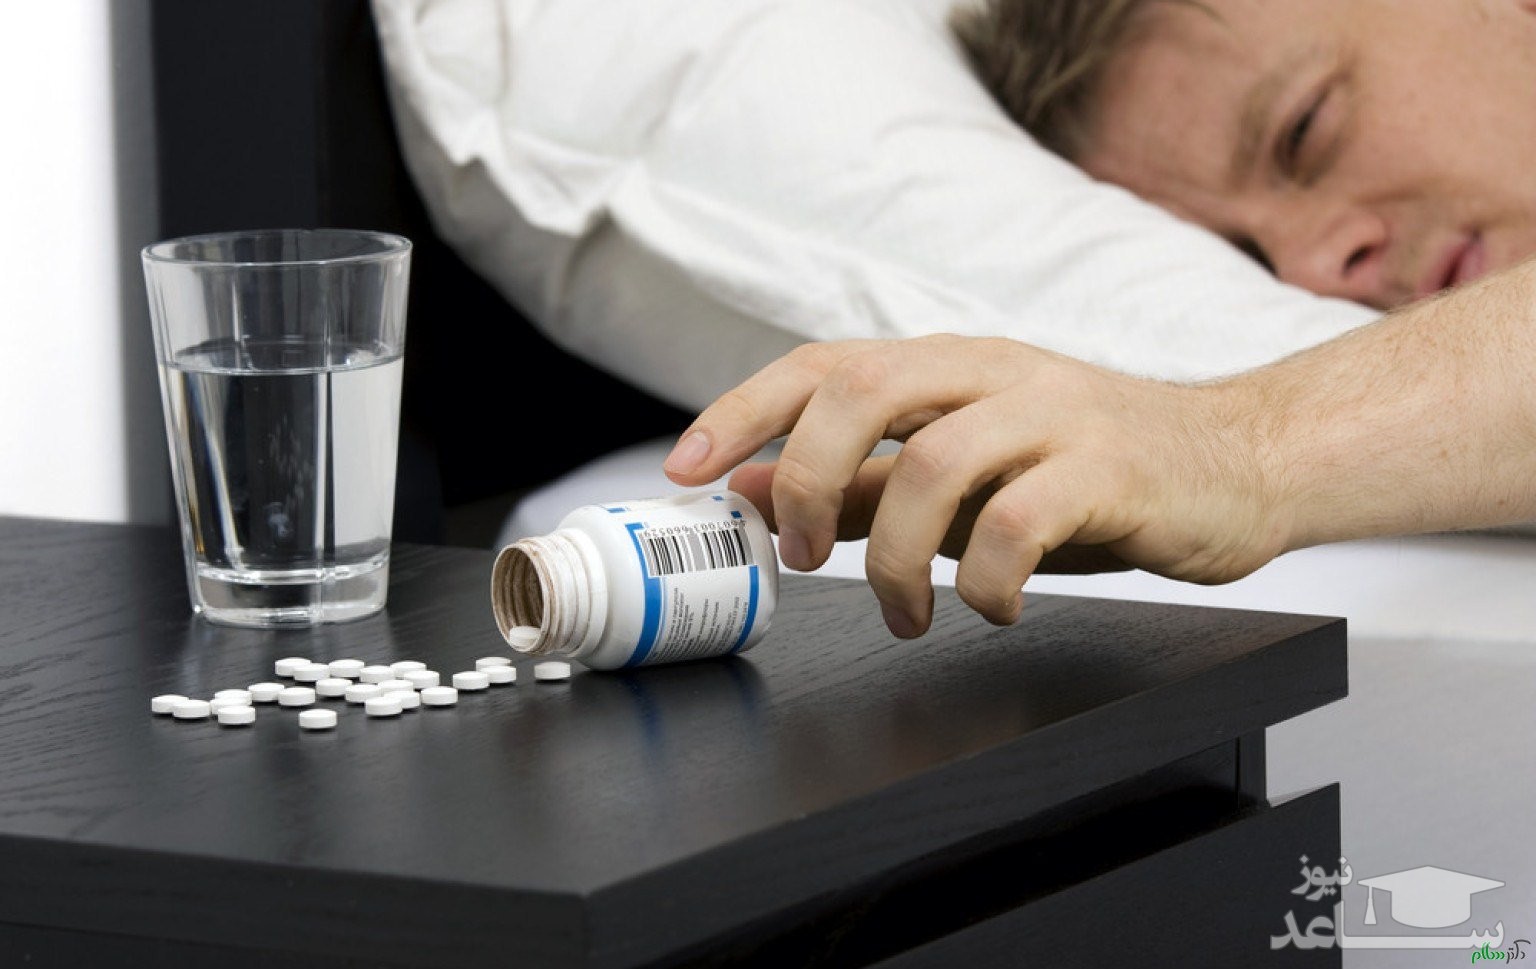 بی خطرترین داروی خواب و مزایای آن چیست؟